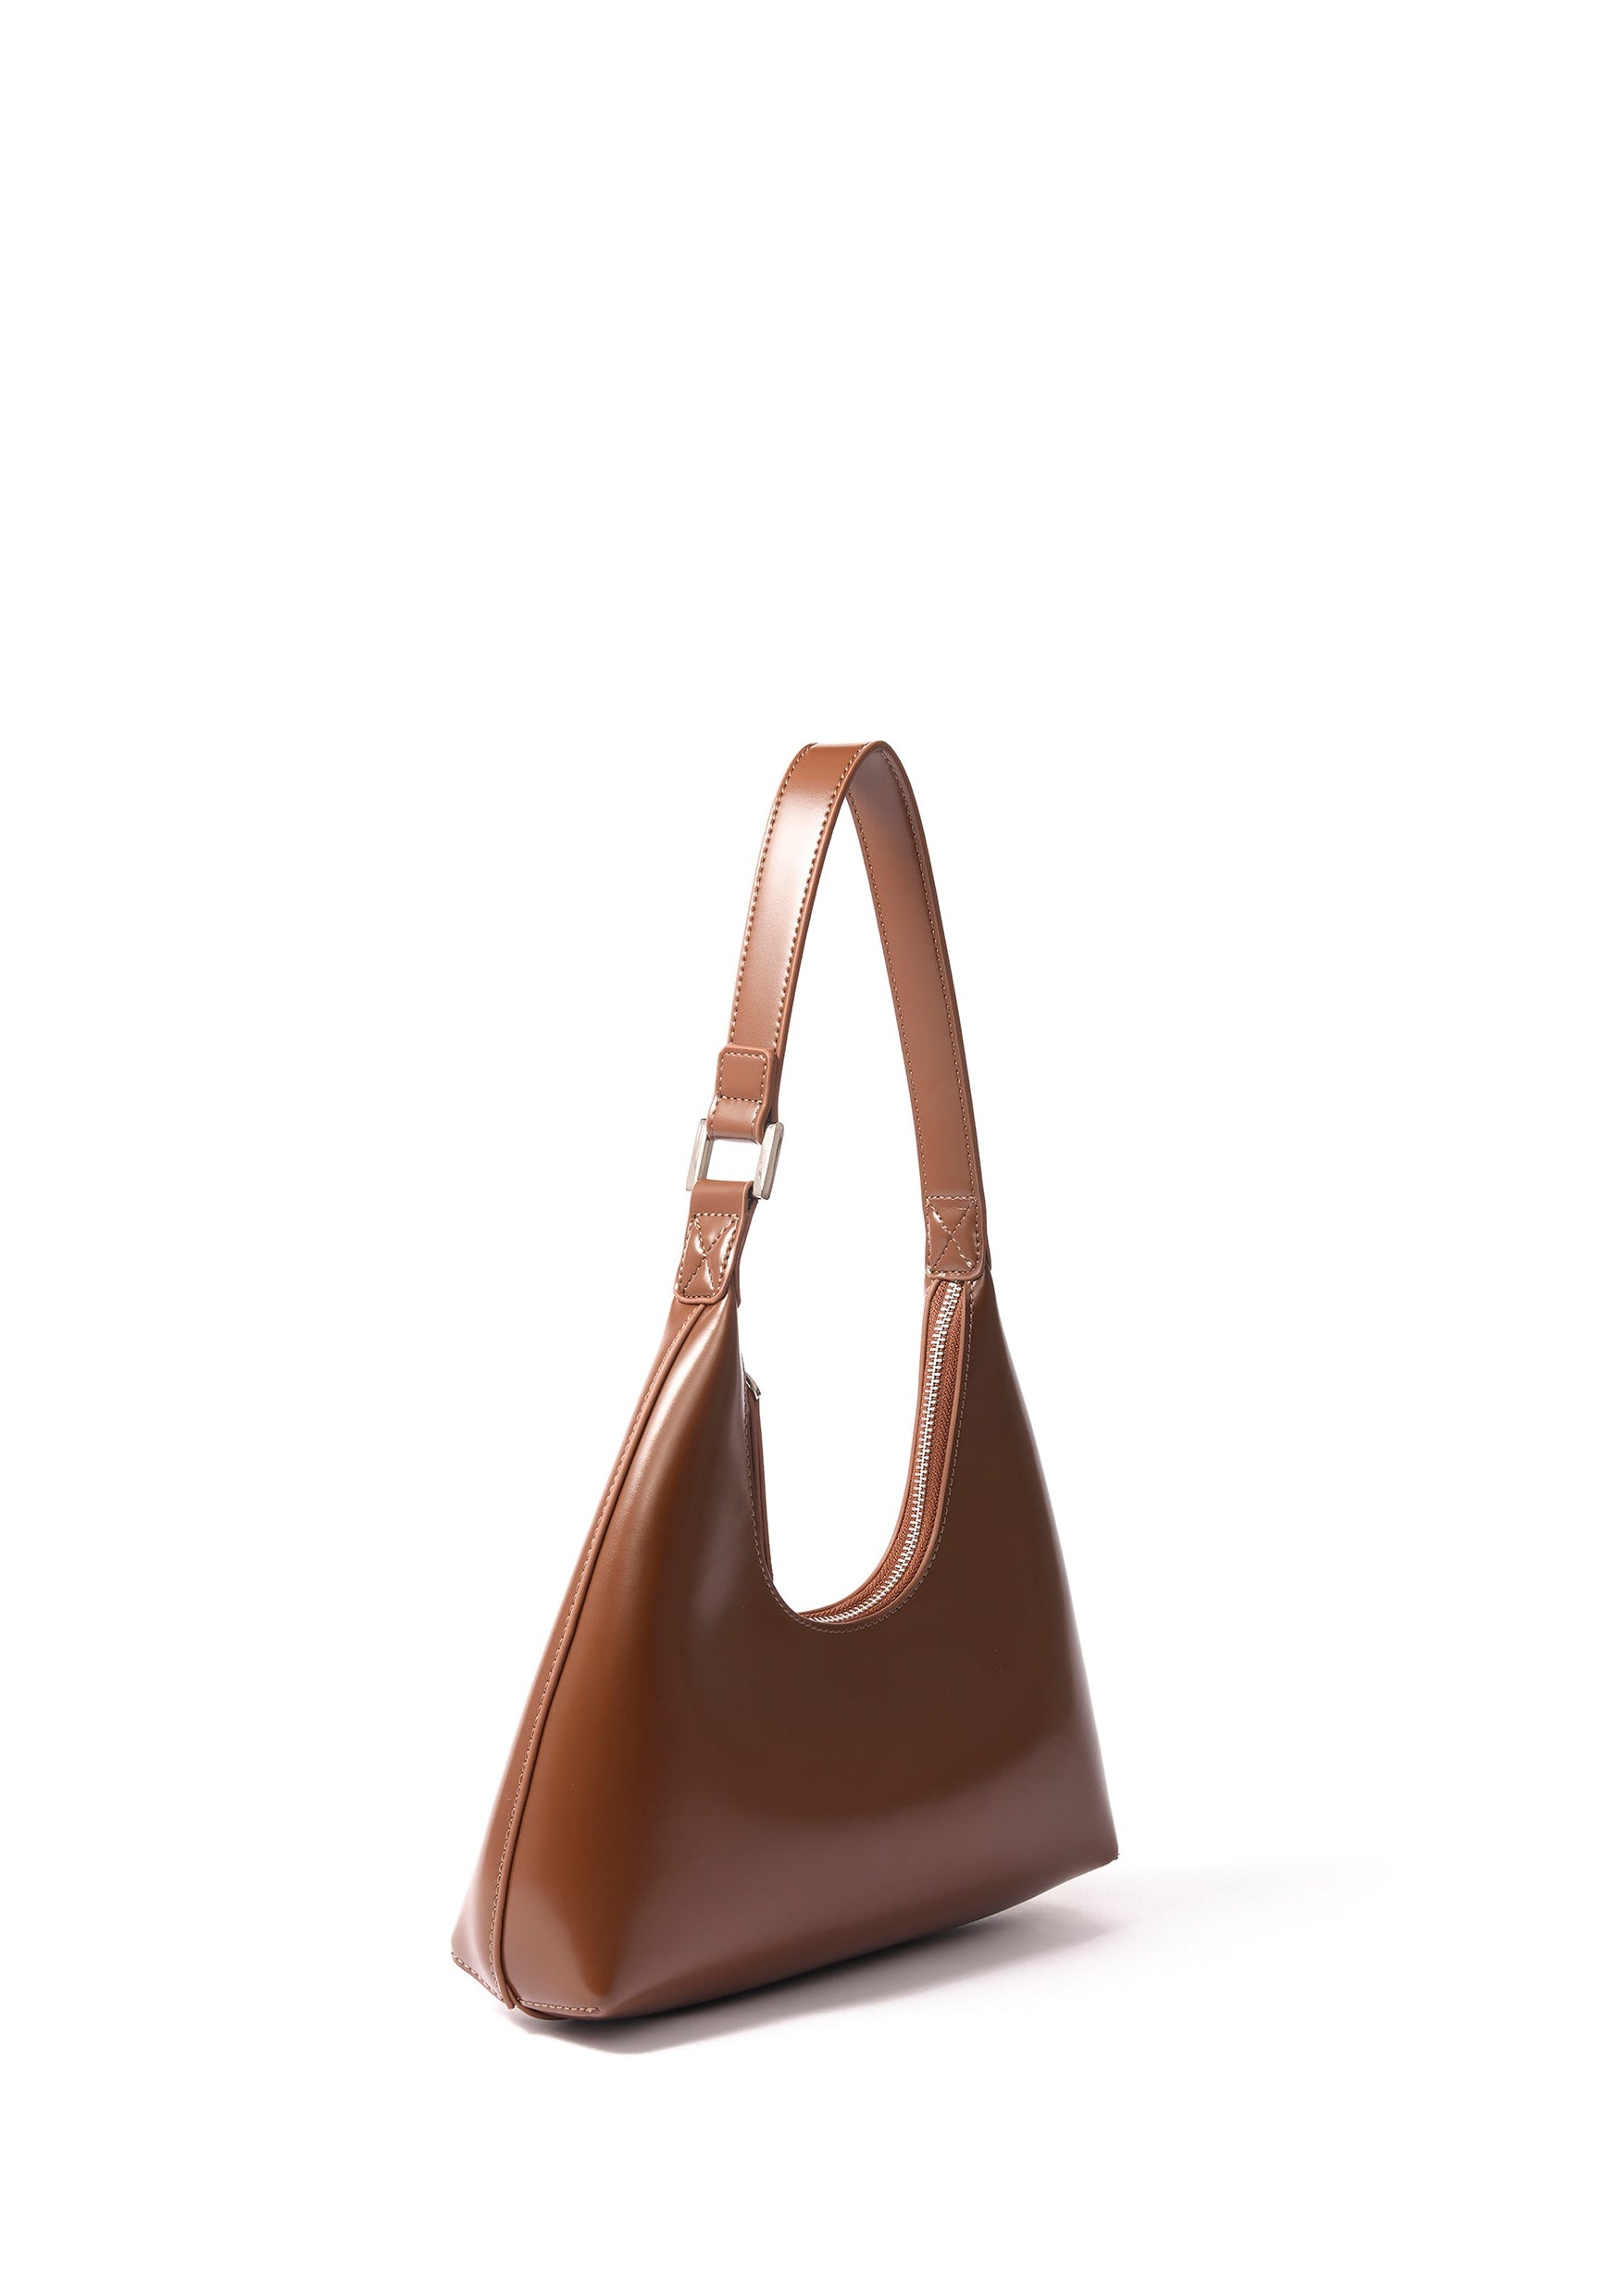 Alexia Bag in Smooth Leather, Caramel Bob Oré